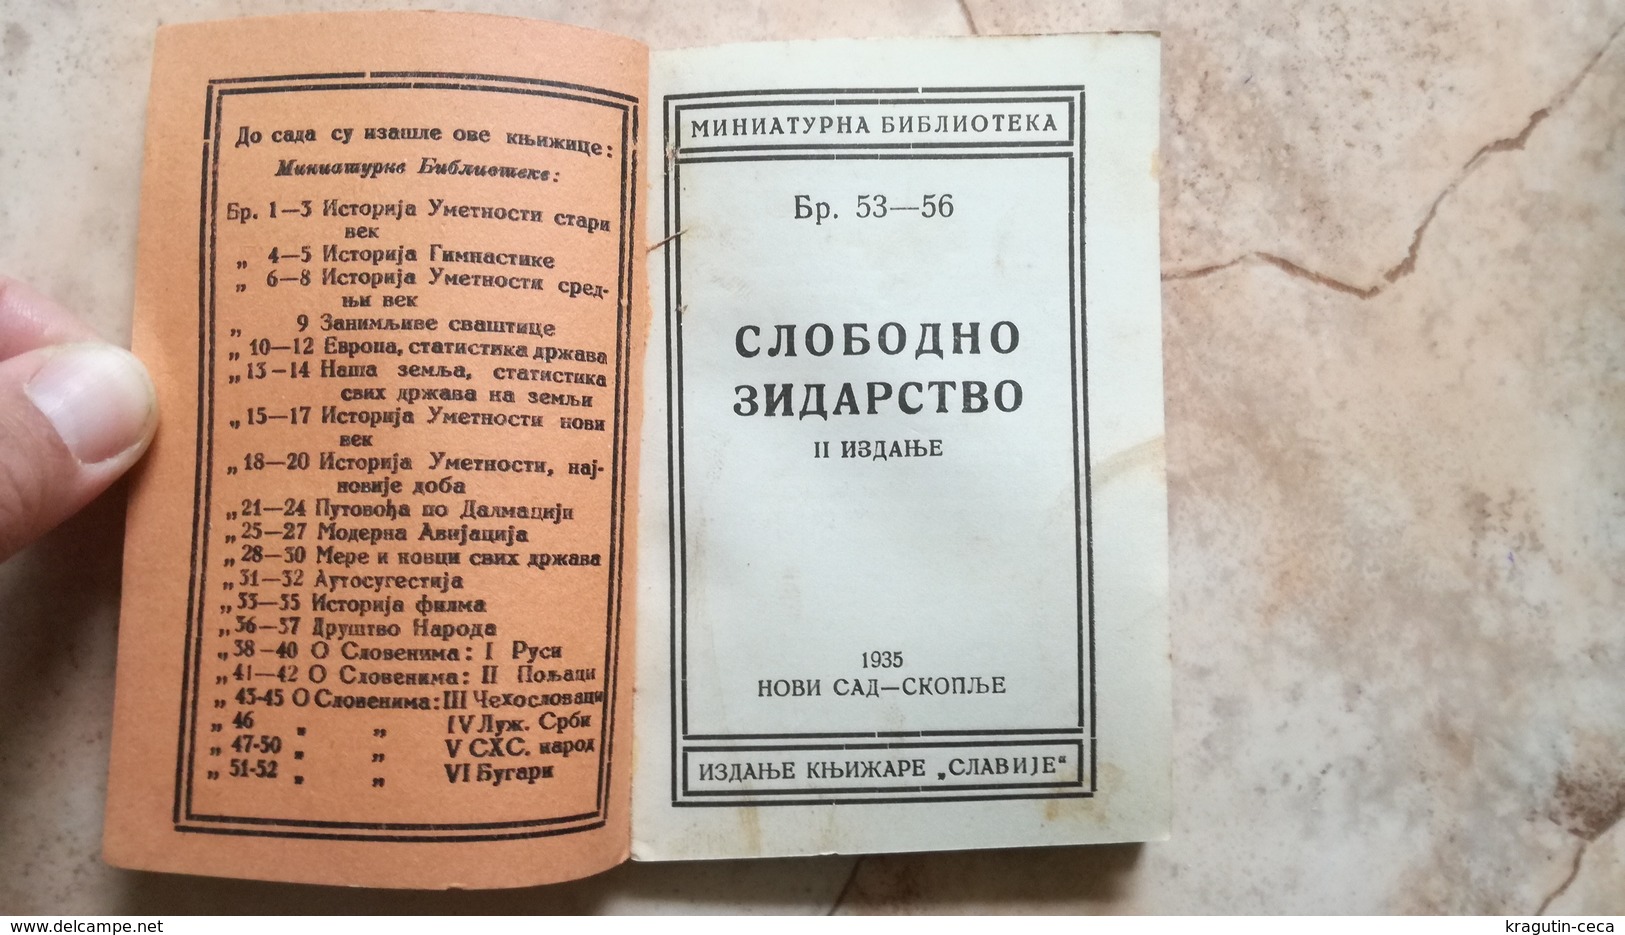 1936 MASON MASONIC Masonry FREEMASONRY MINI BOOK KINGDOM Yugoslavia SERBIA EUROPE BUCHE MASONERIA Freimaurer MAUERWERK